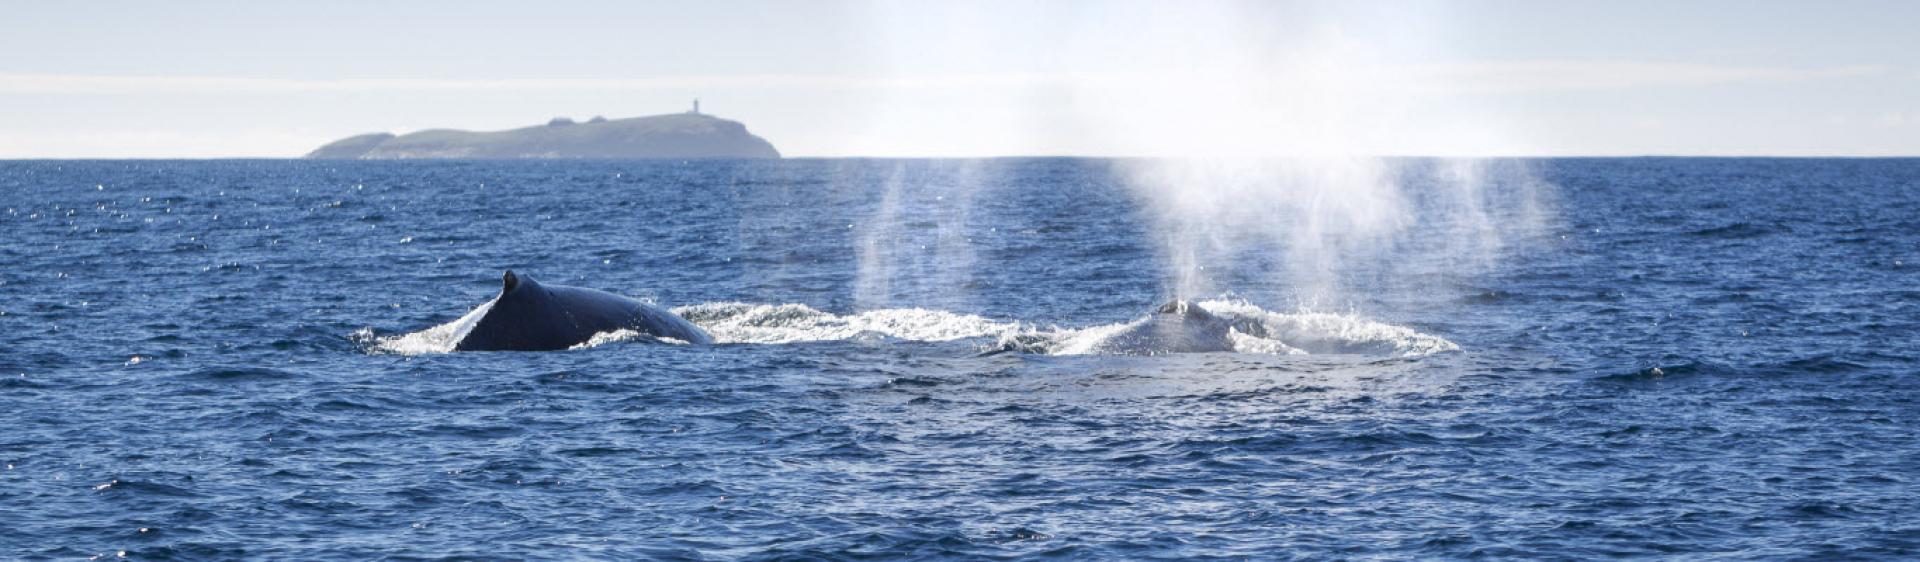 考夫斯海岸 (Coffs Coast) 观鲸